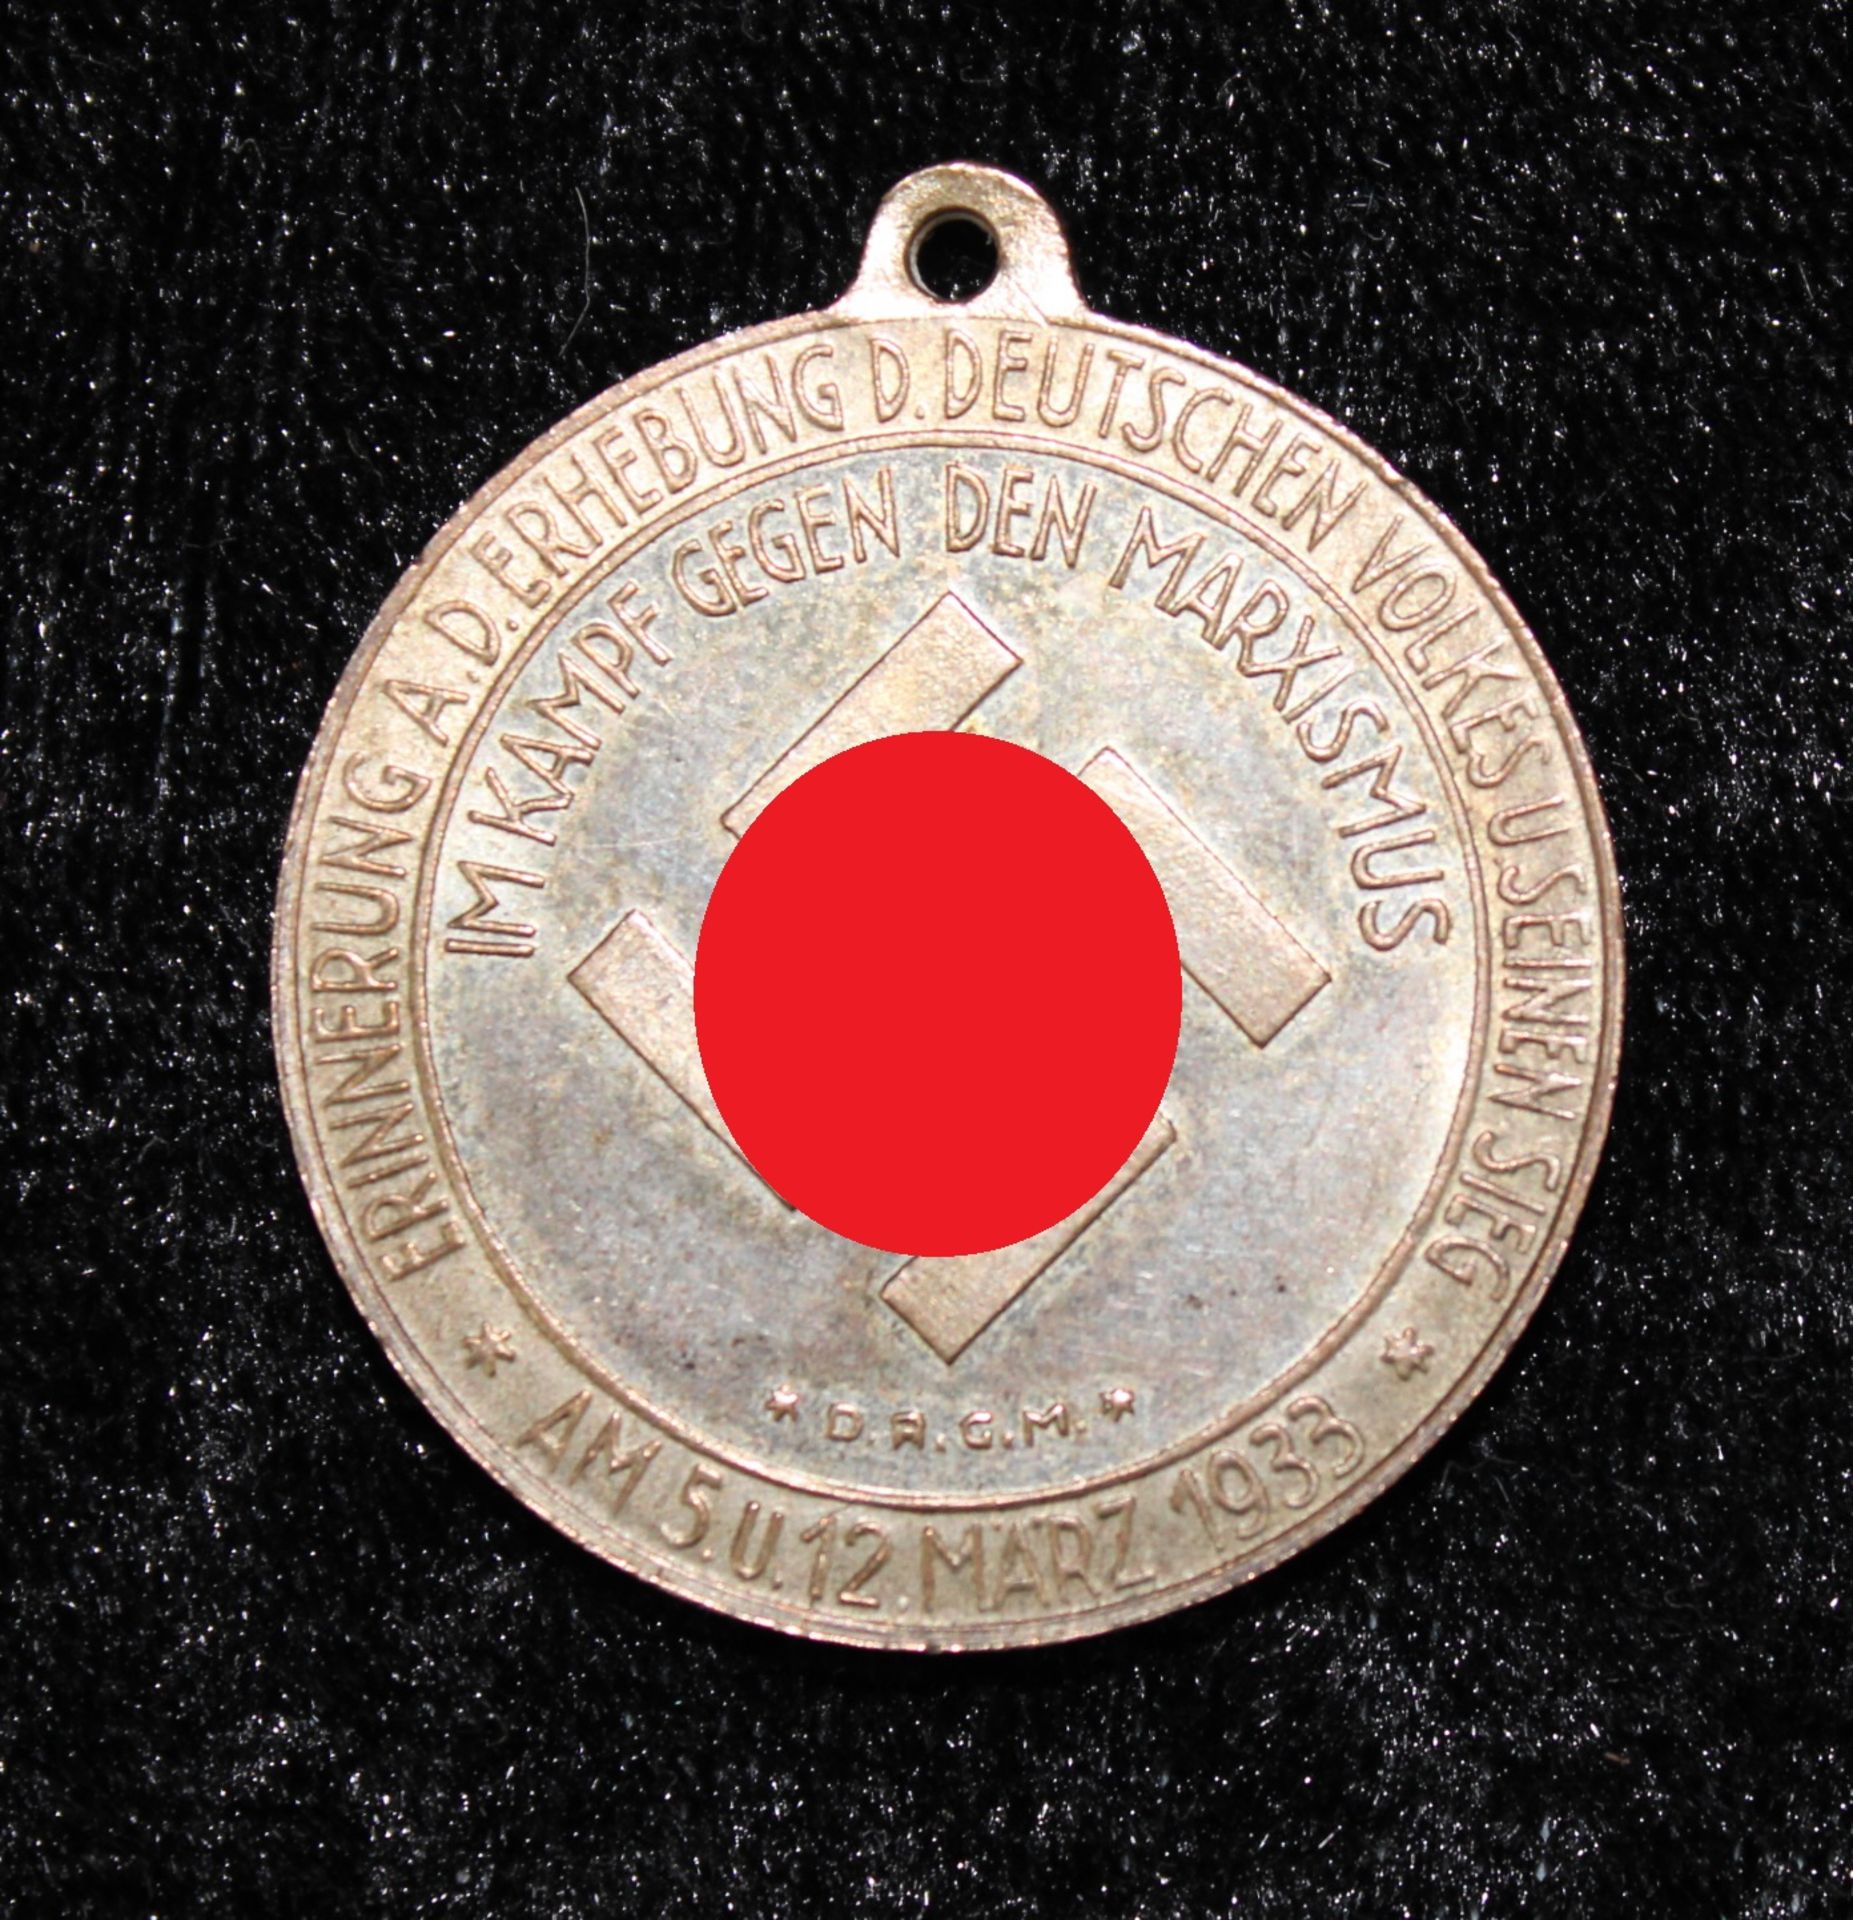 Bronzemedaille, vergoldet, Deutsche nationale Erhebung März 1933, Ø 30 mm, D.R.G.M. - Bild 2 aus 2